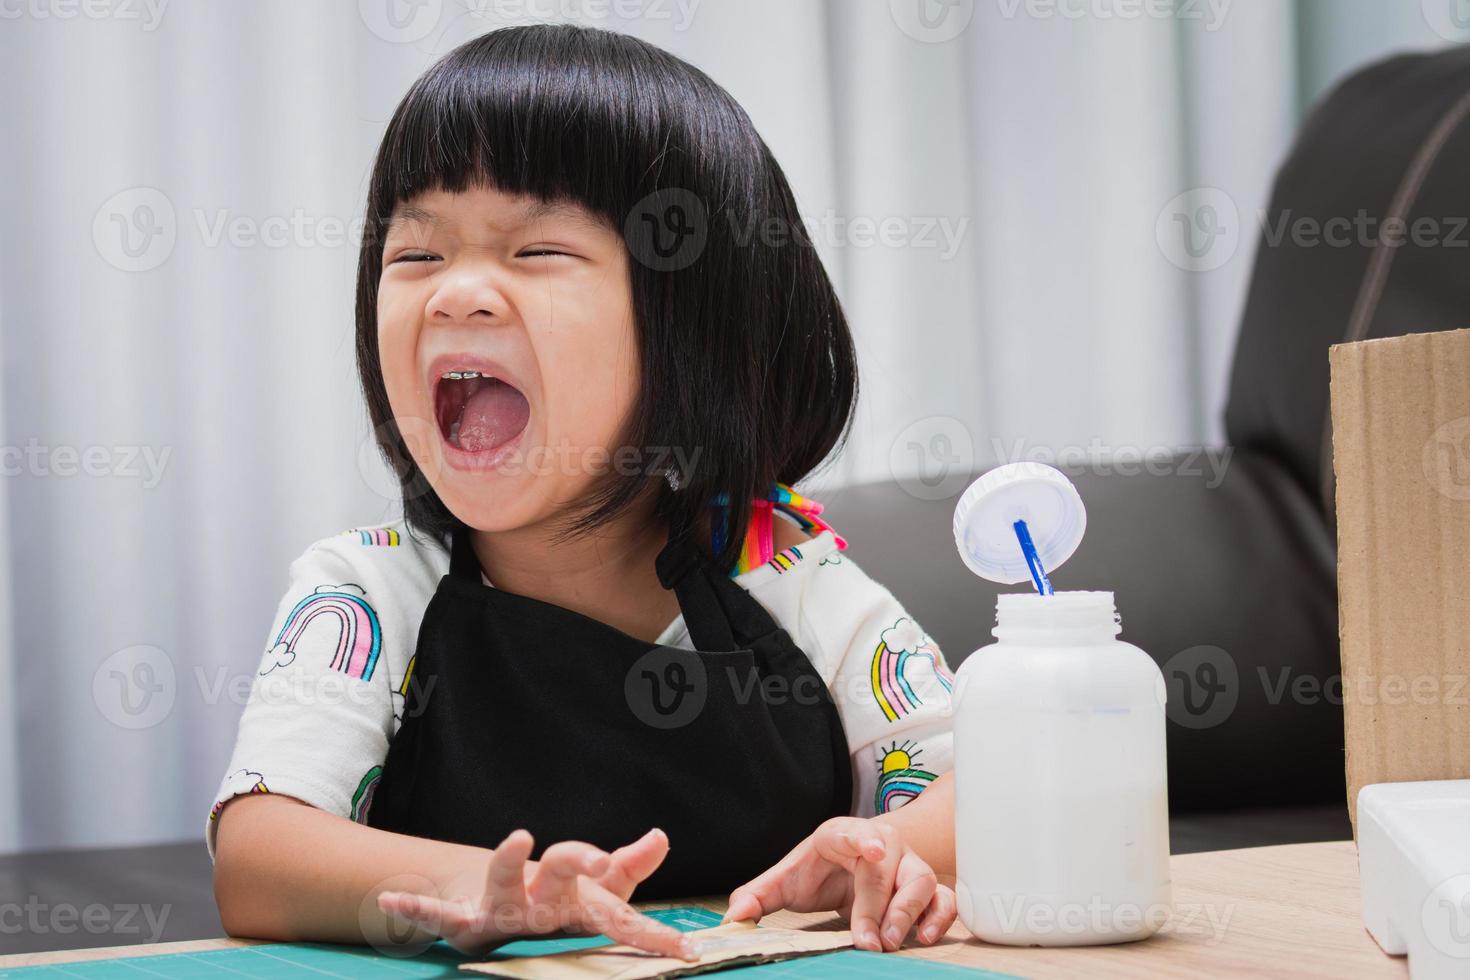 gelukkig Aziatisch meisje met een zwarte schort, lachend kind terwijl ze op een stuk ambacht plakt. het concept van leren door te spelen. kind van 4-5 jaar oud. foto